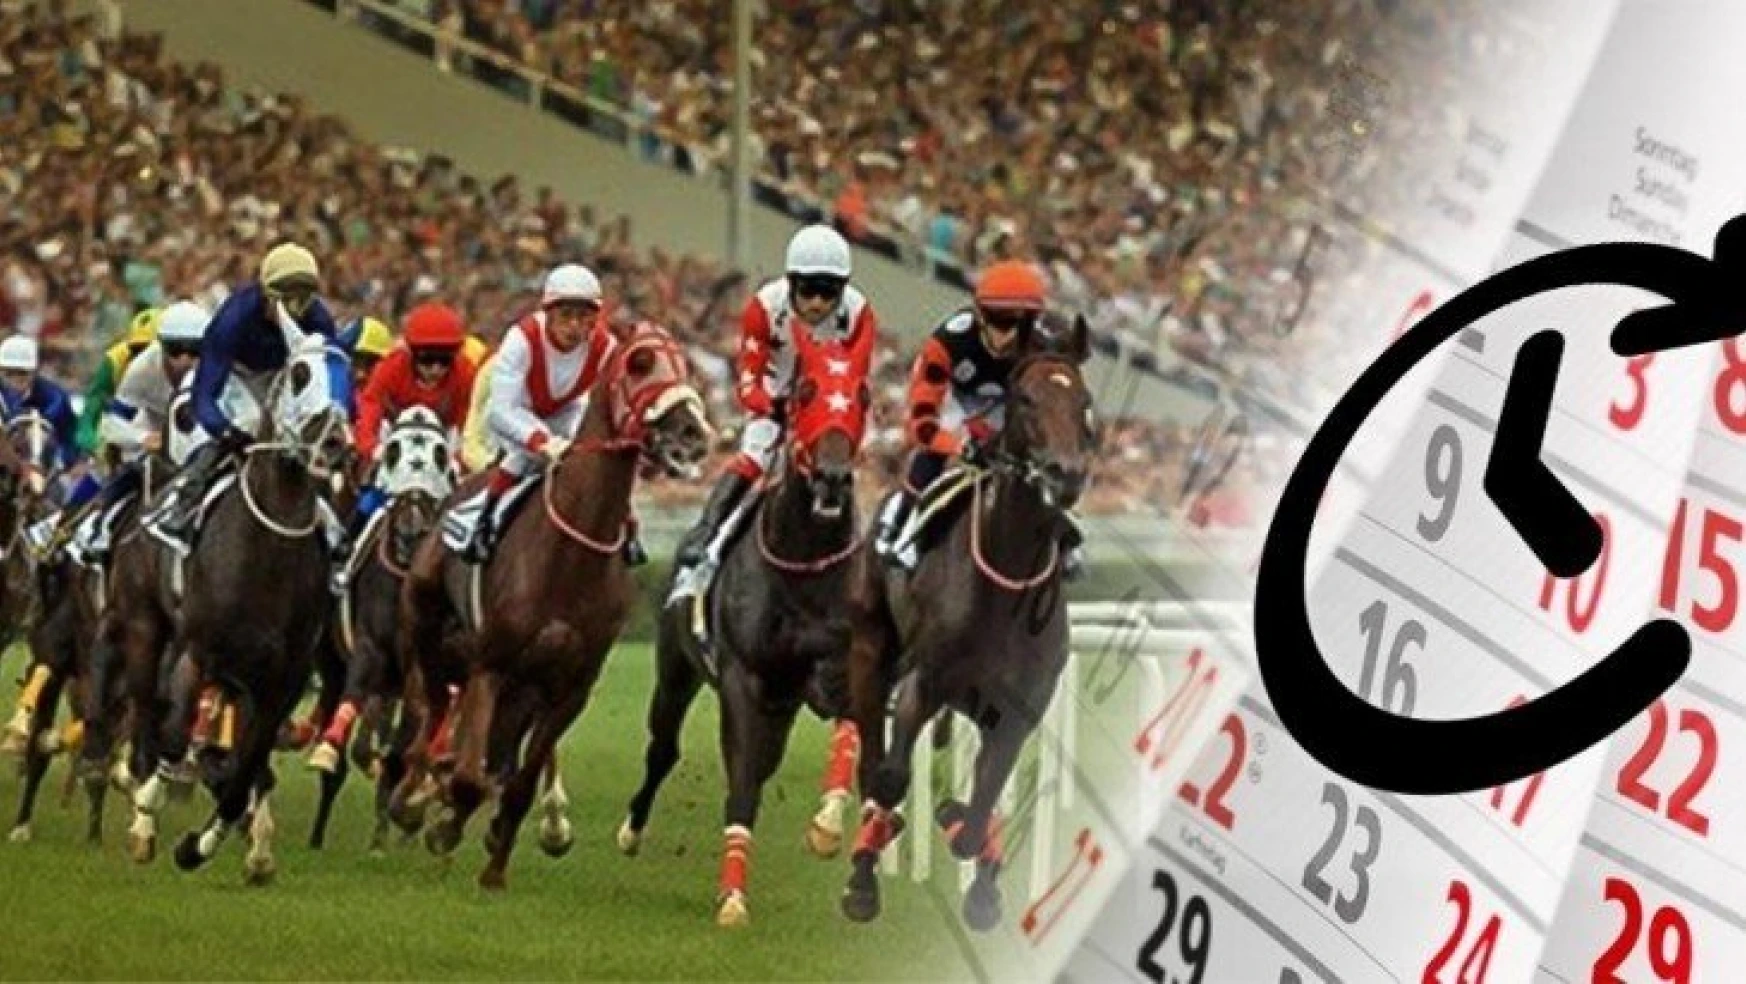 At Yarışları İçin Karar Mayıs'ta Alınacak